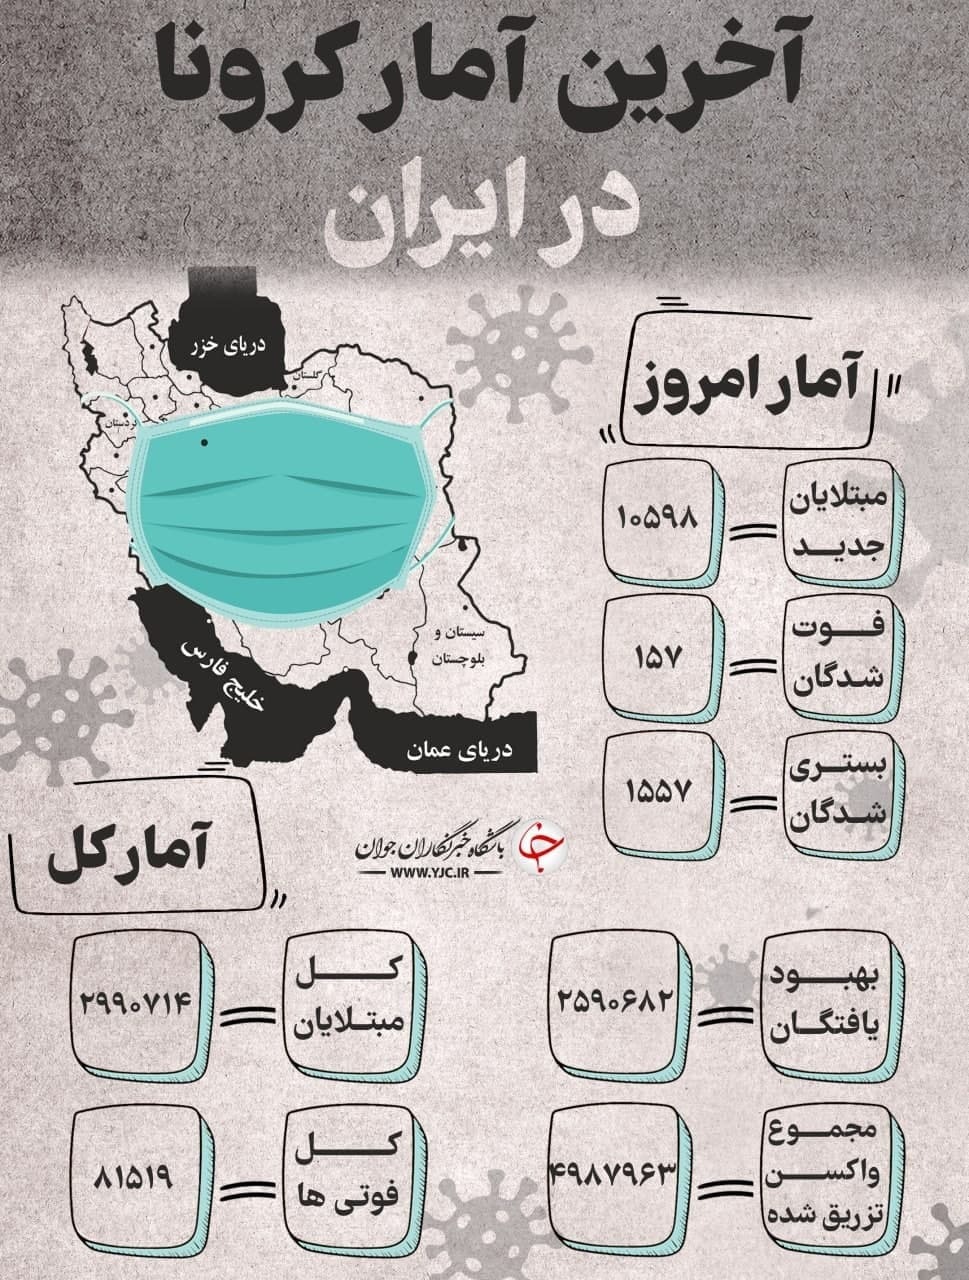 آخرین آمار کرونا در ایران؛ 19 خرداد 1400